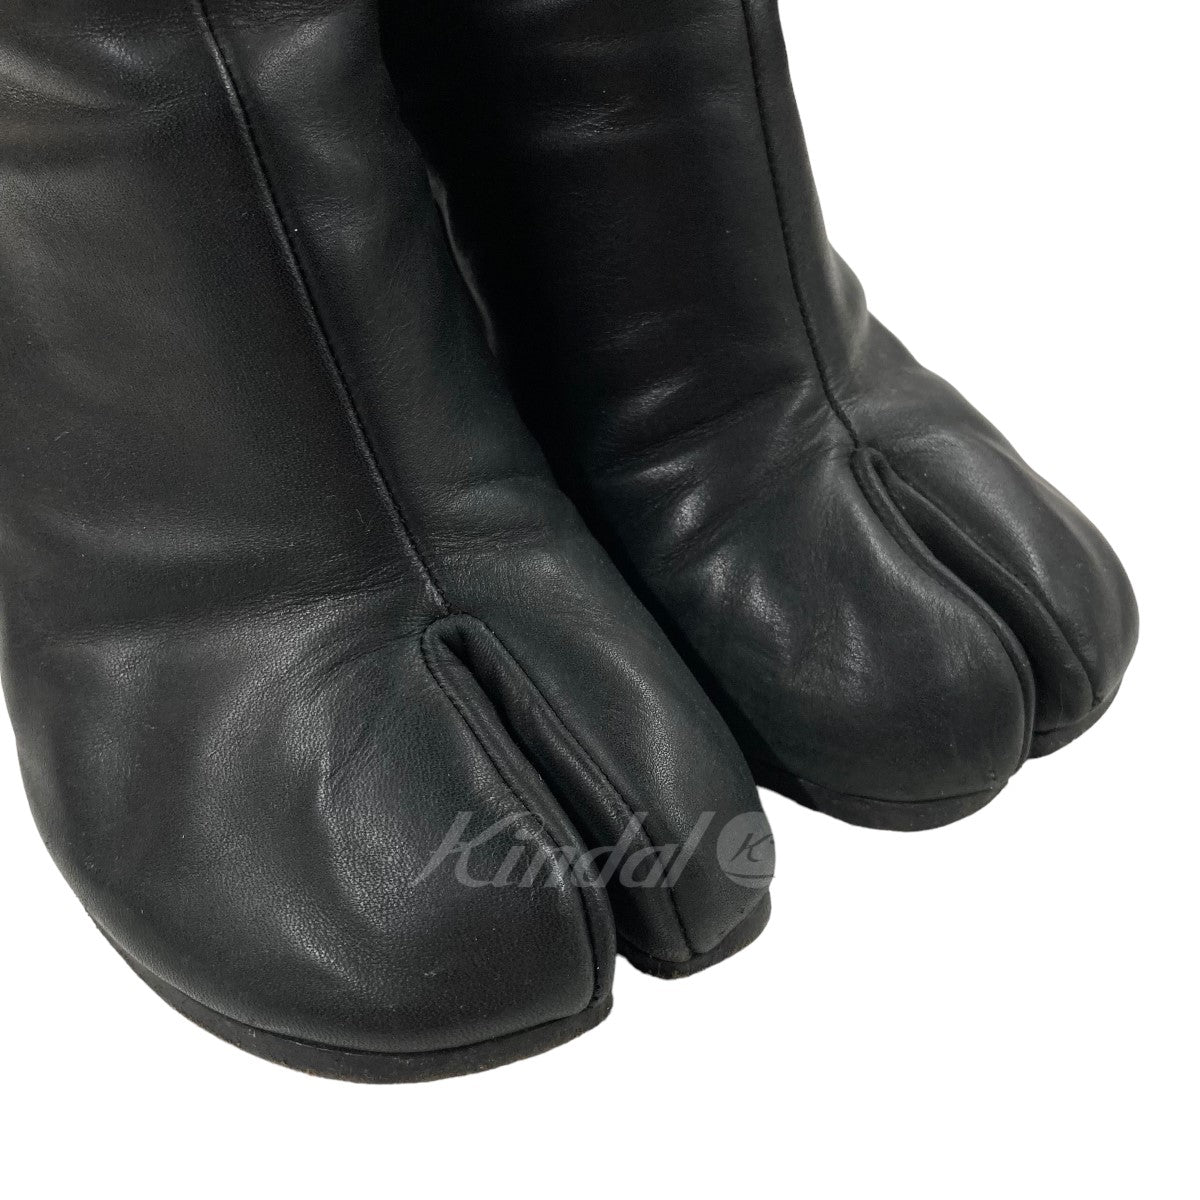 Maison Margiela(メゾン マルジェラ) 足袋ブーツ S9WU0097 ブラック 